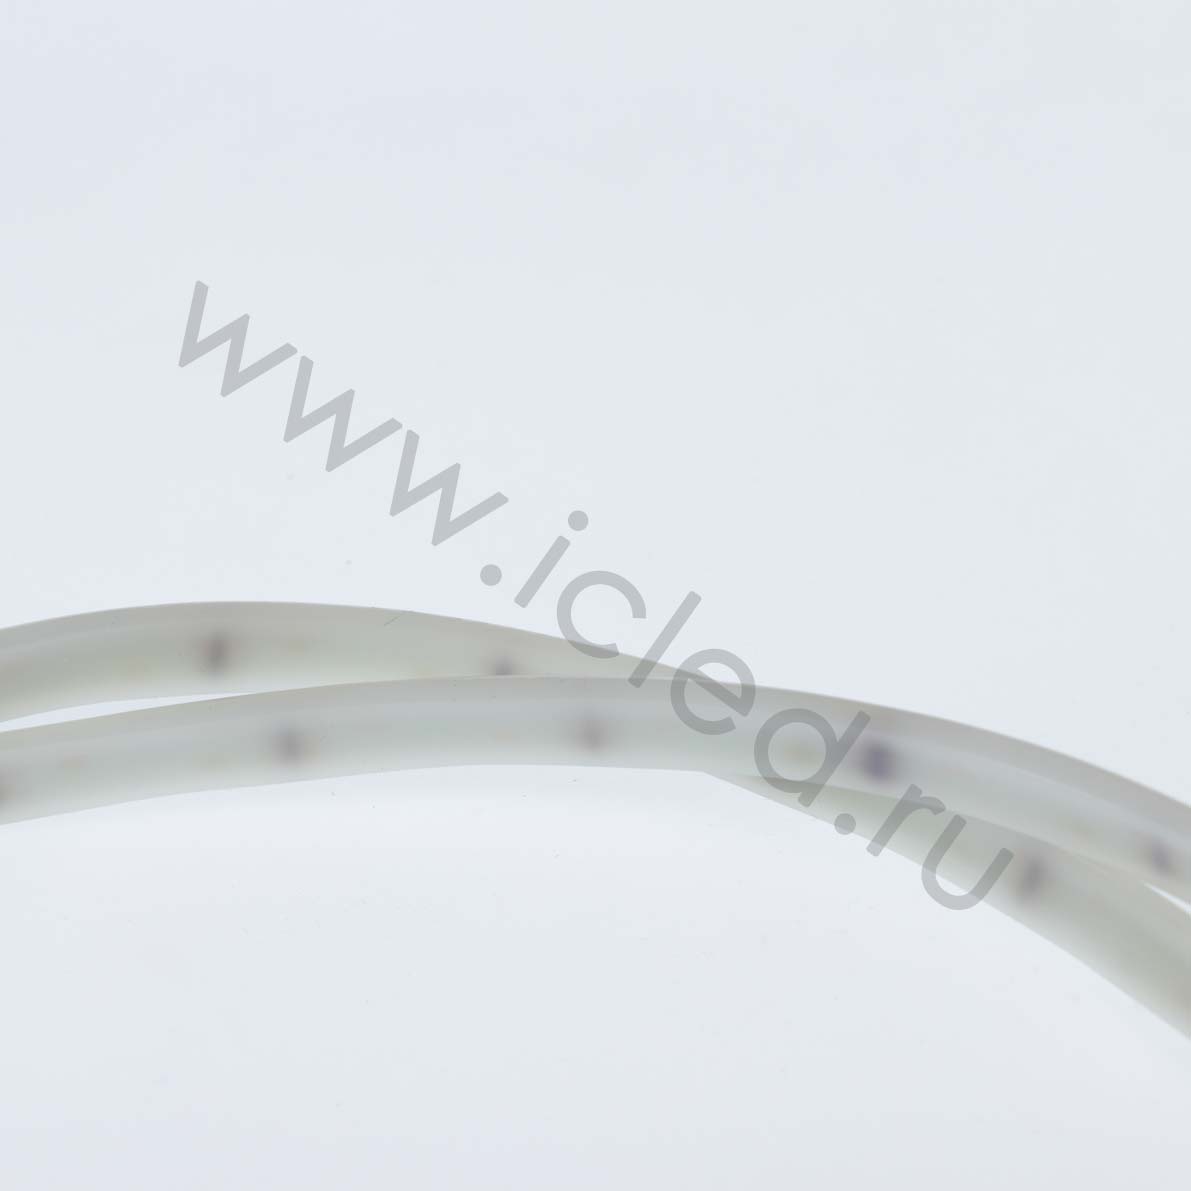 Влагозащищенные светодиодные ленты Светодиодная лента Standart Pro class 2835 120led/m, white, 12V, IP68, N332 Icled